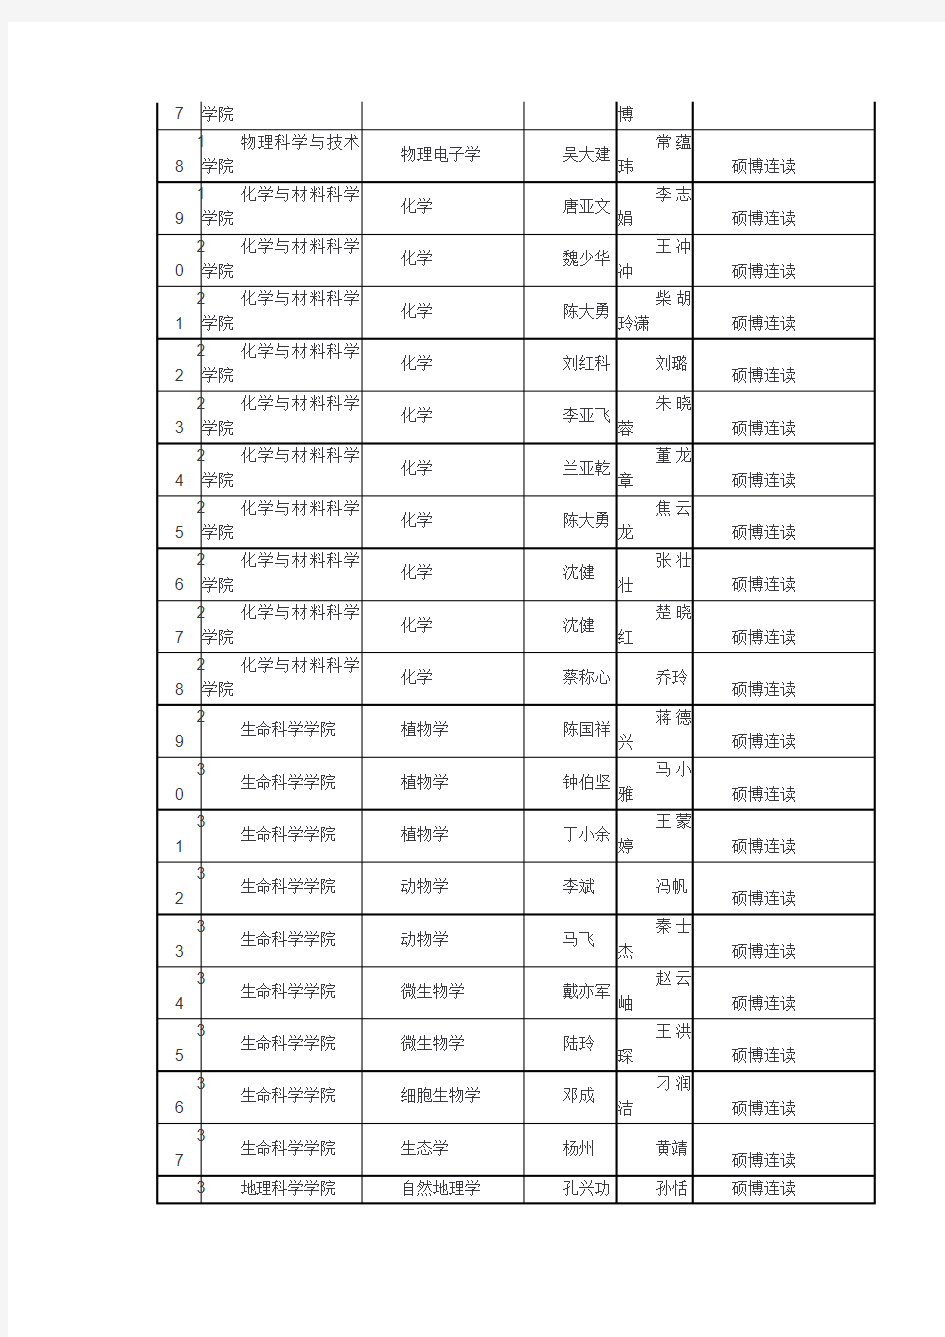 南京师范大学2019年博士研究生拟录取名单(第一批)公示